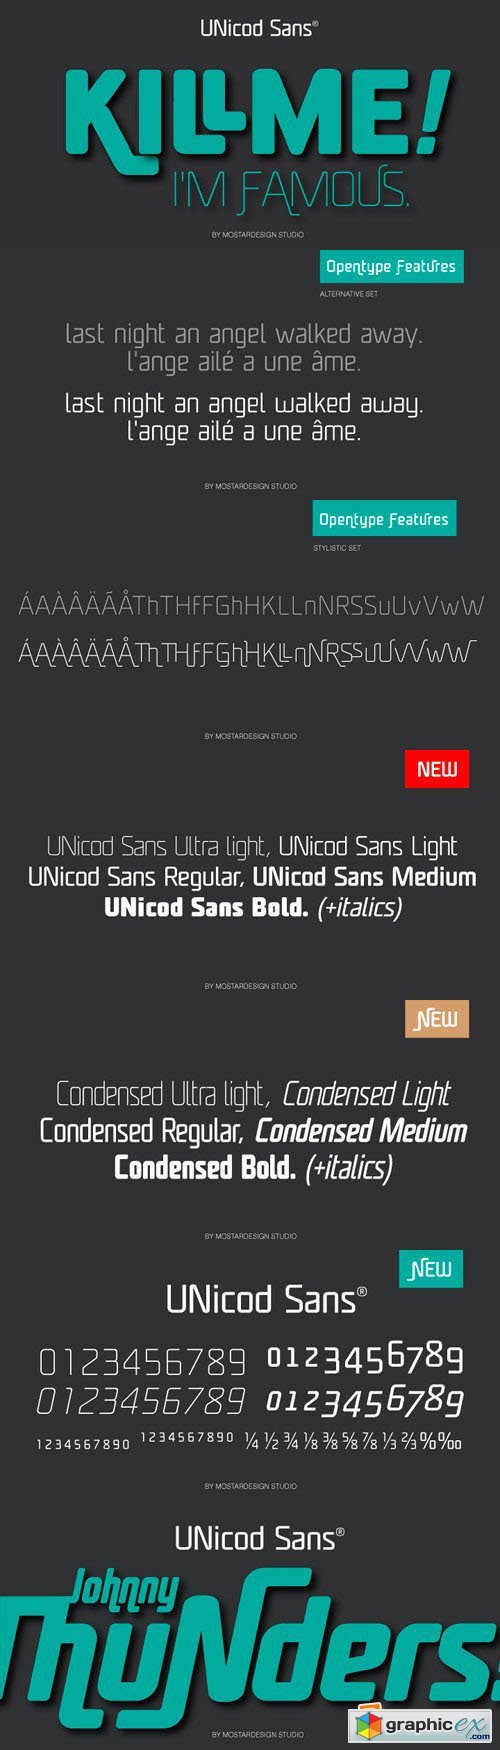 Unicod Sans Font Family - 18 Fonts for $299